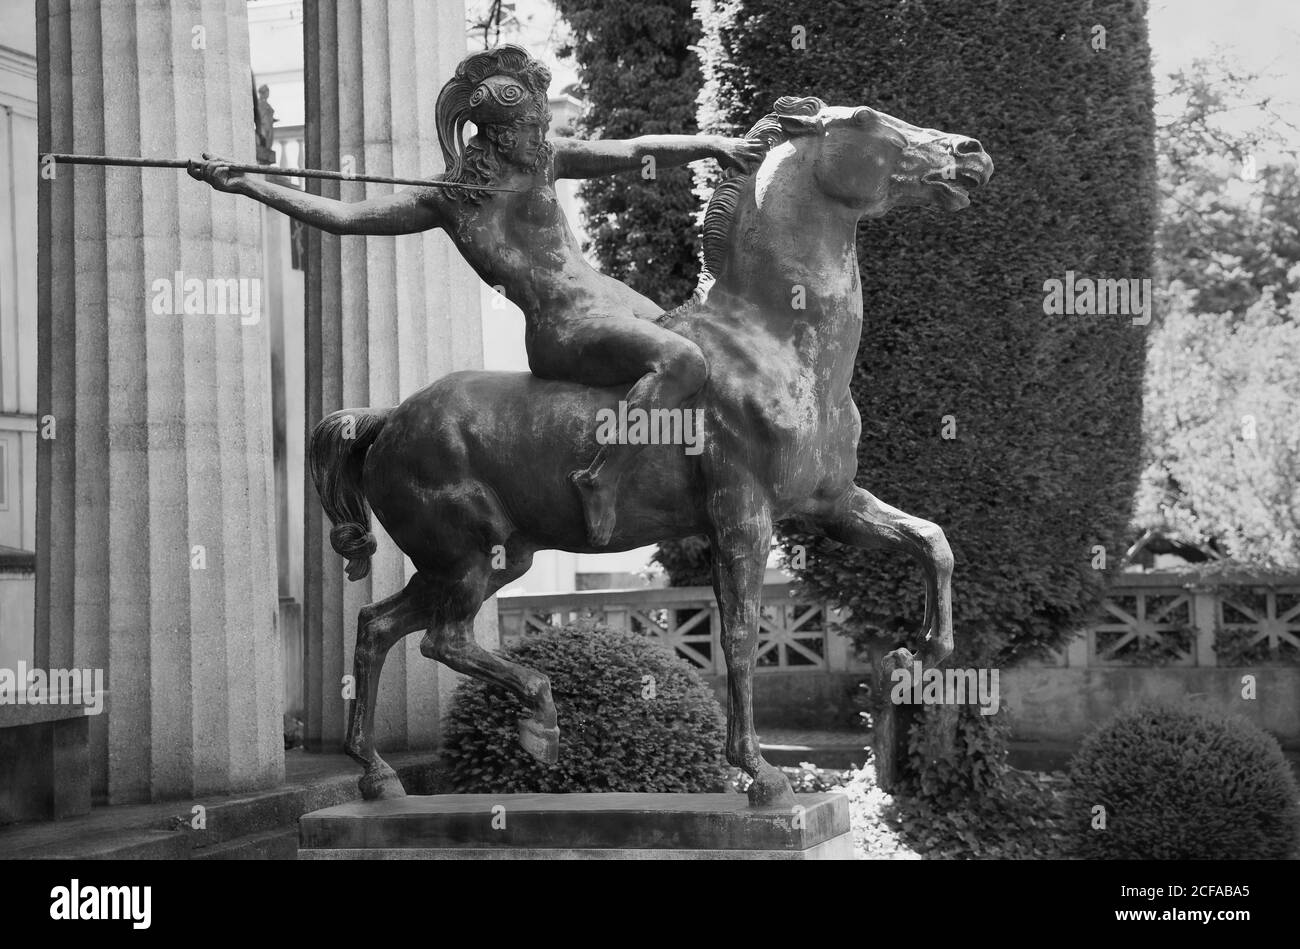 Amazone 1913-14 : Amazonas auf dem PferderackNeoklassik / Symbolismus Statue von Franz von Stuck. Details. München, Deutschland. 6200 x 4100 300 dpi I. Stockfoto